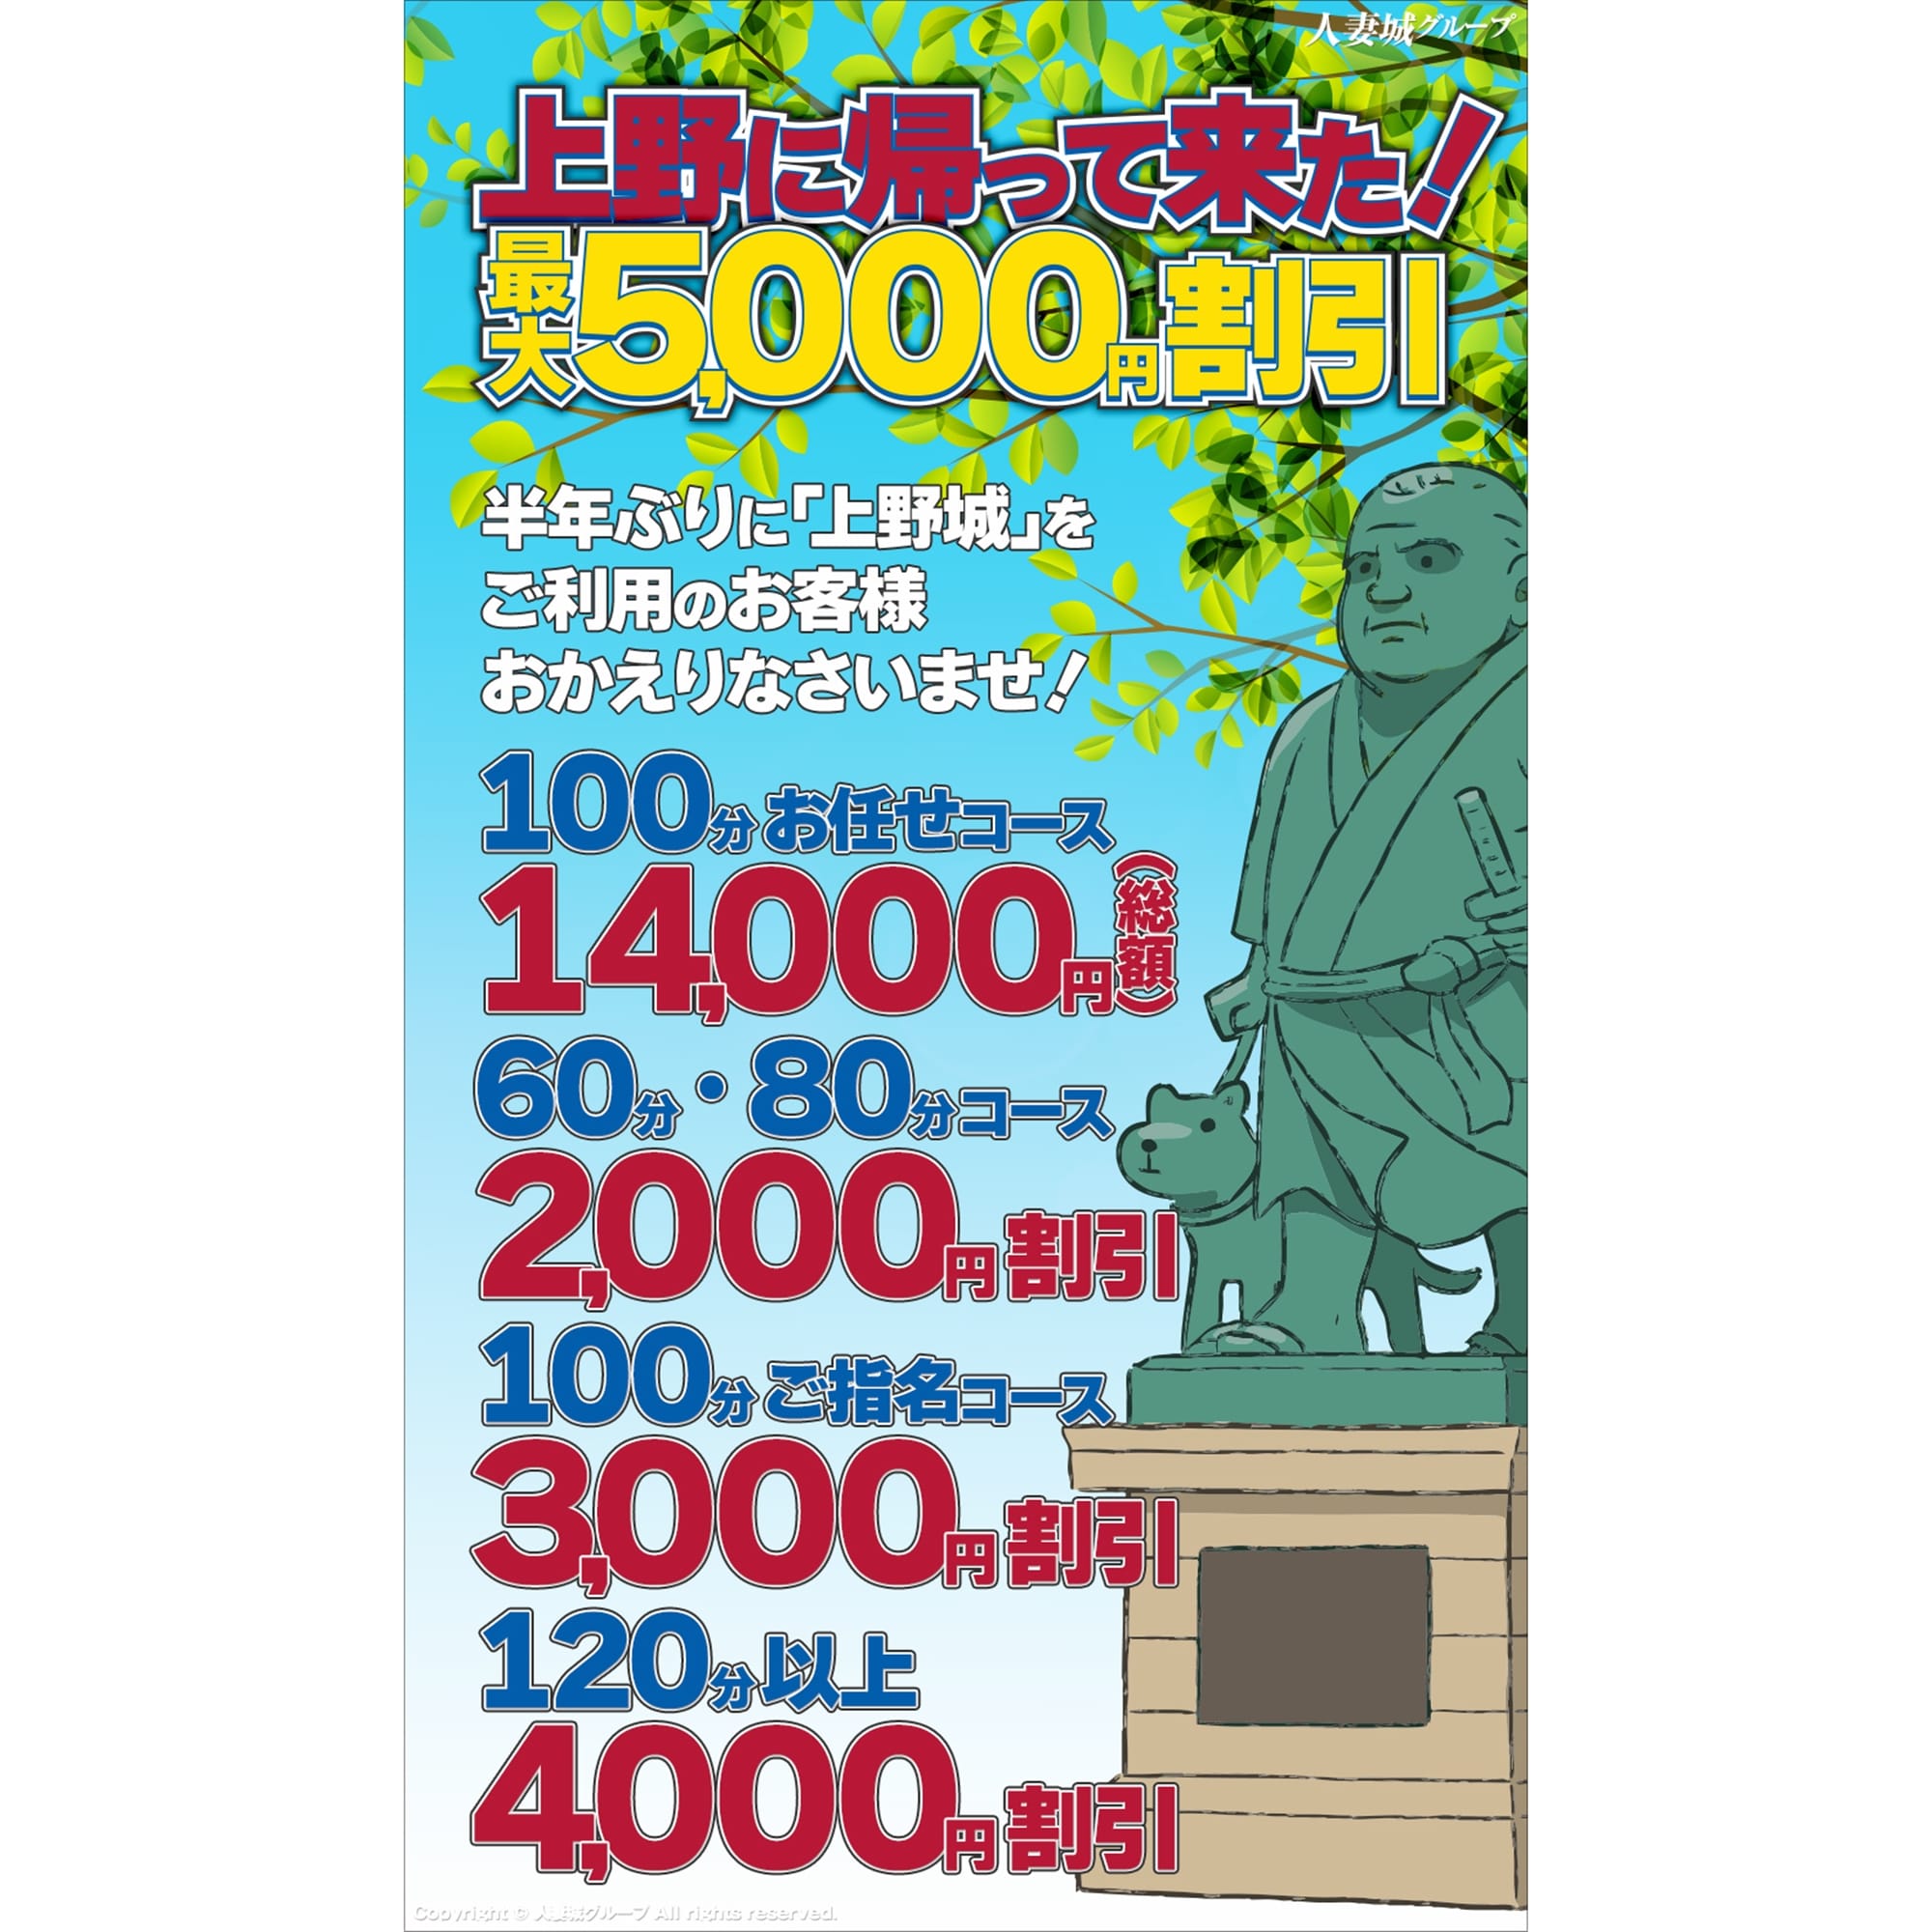 「上野に帰って来た!」05/06(月) 16:04 | 上野人妻城のお得なニュース